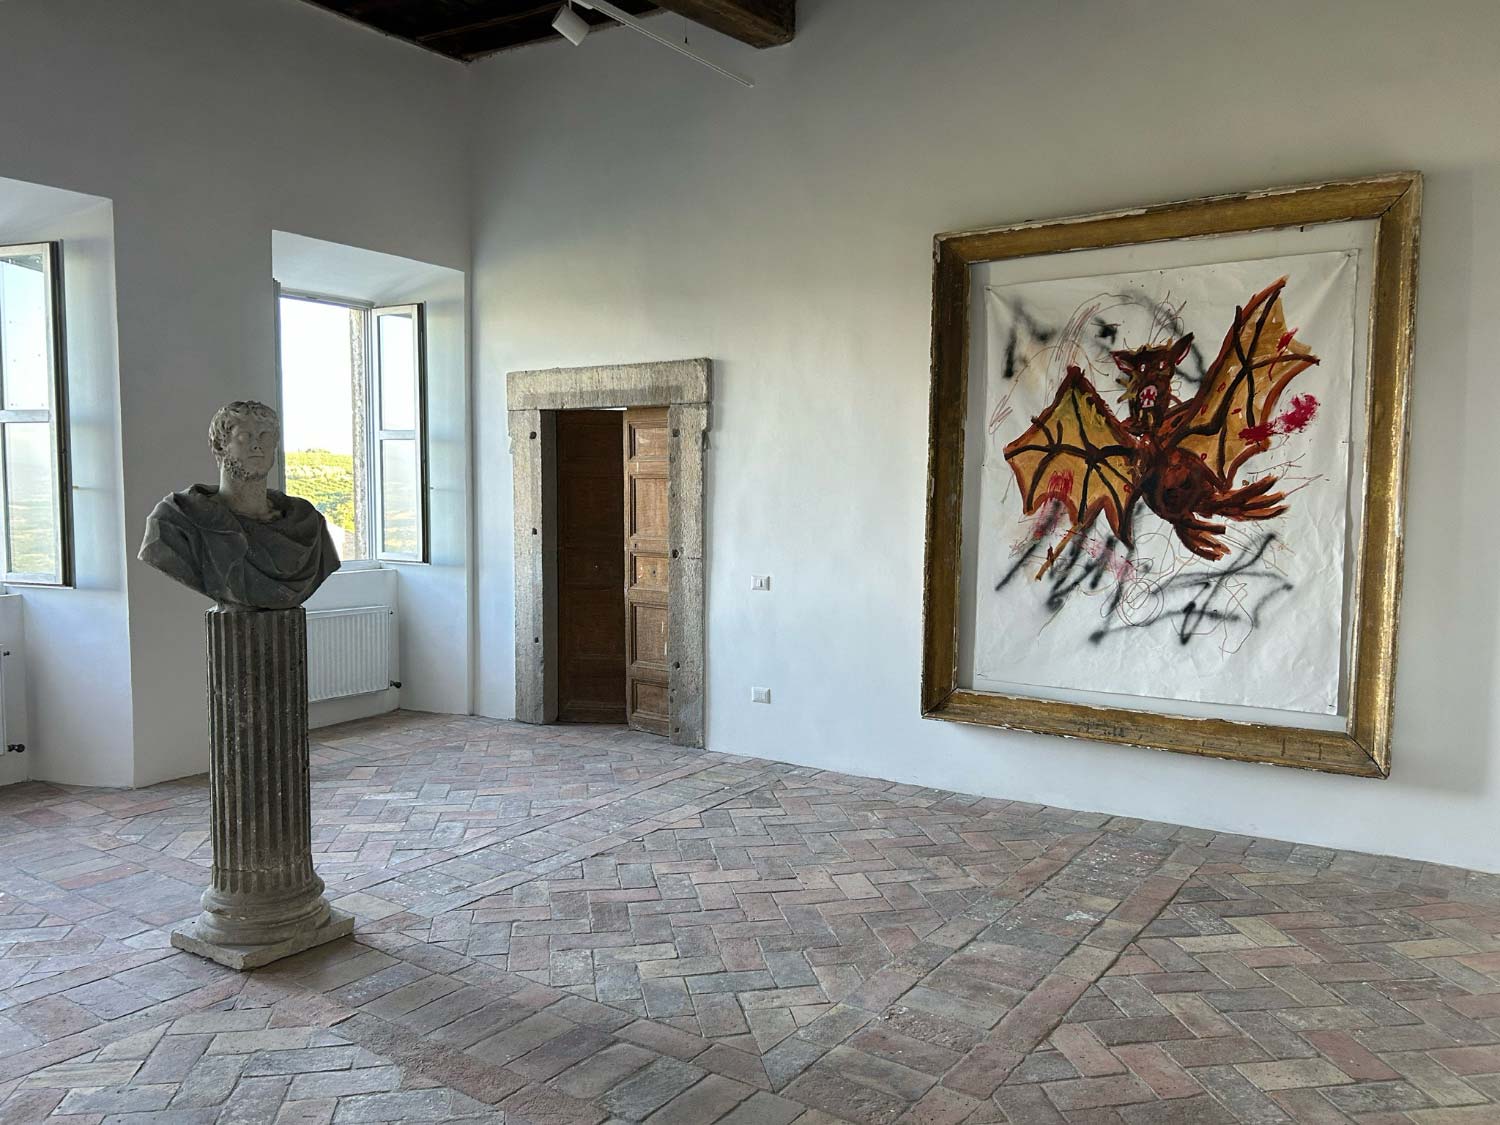 Palazzo Altemps-Twombly a Bassano in Teverina dove Cy Twombly ha dipinto dal 1975 al 2008, oggi sede della Fondazione Iris